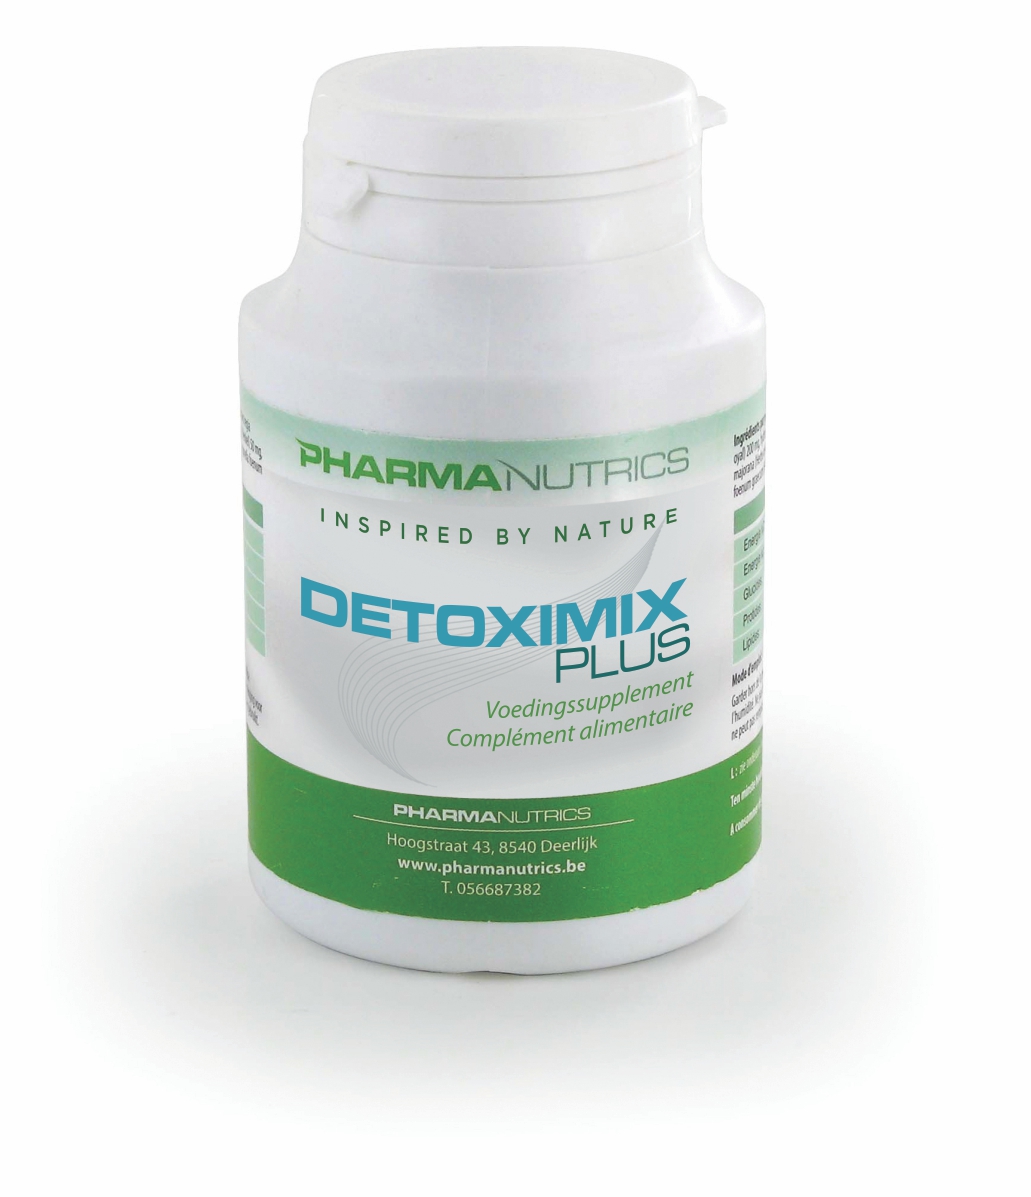 Image of Pharmanutrics Detoximix Plus 60 Capsules 